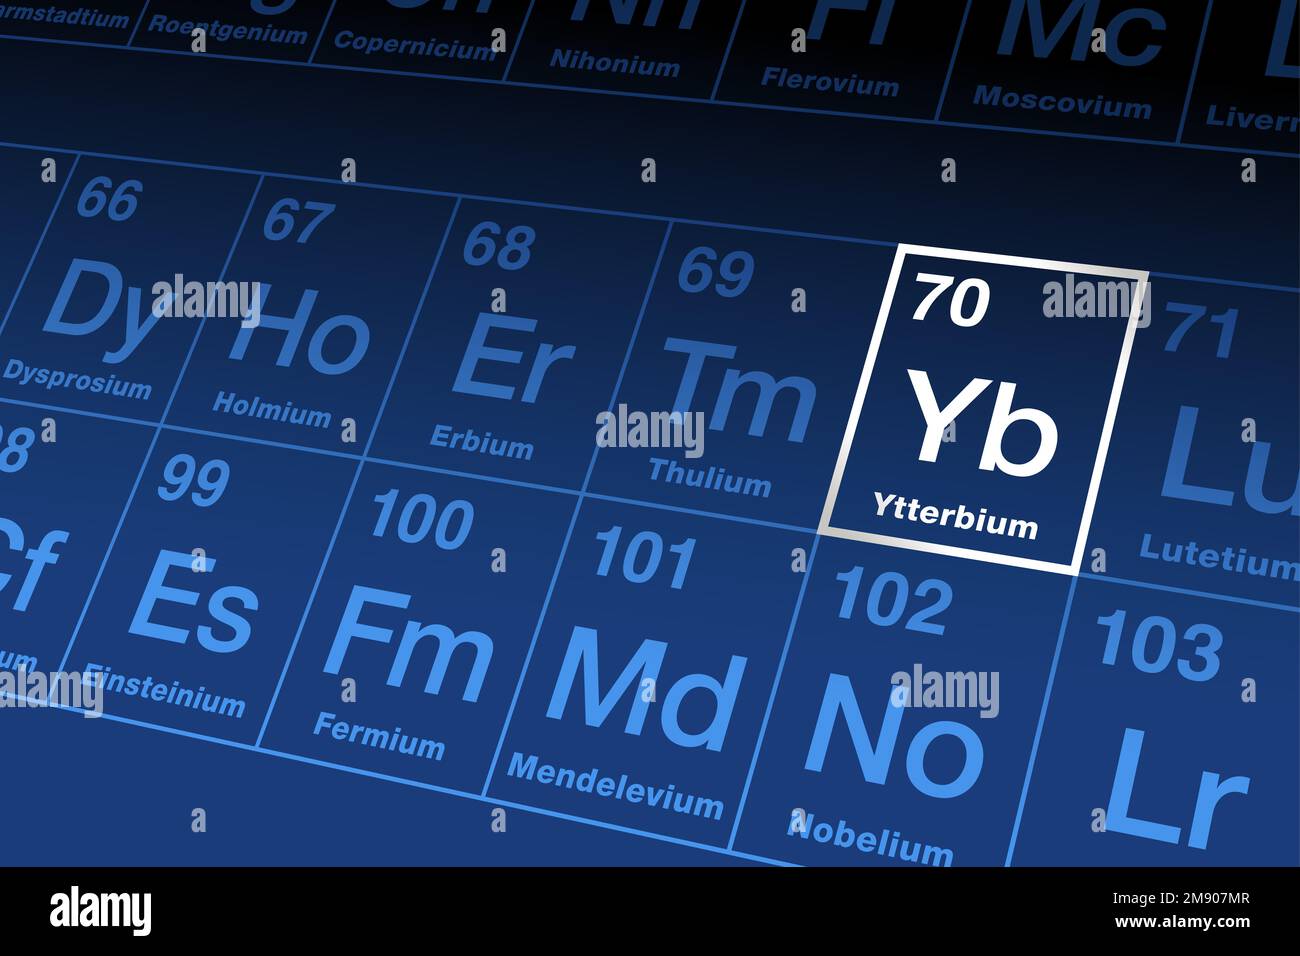 Ytterbium auf dem Periodensystem. Seltenerdmetall aus der Reihe der Lanthanide mit der Atomzahl 70 und dem Elementsymbol Yb, nach dem schwedischen Dorf Ytterby. Stockfoto